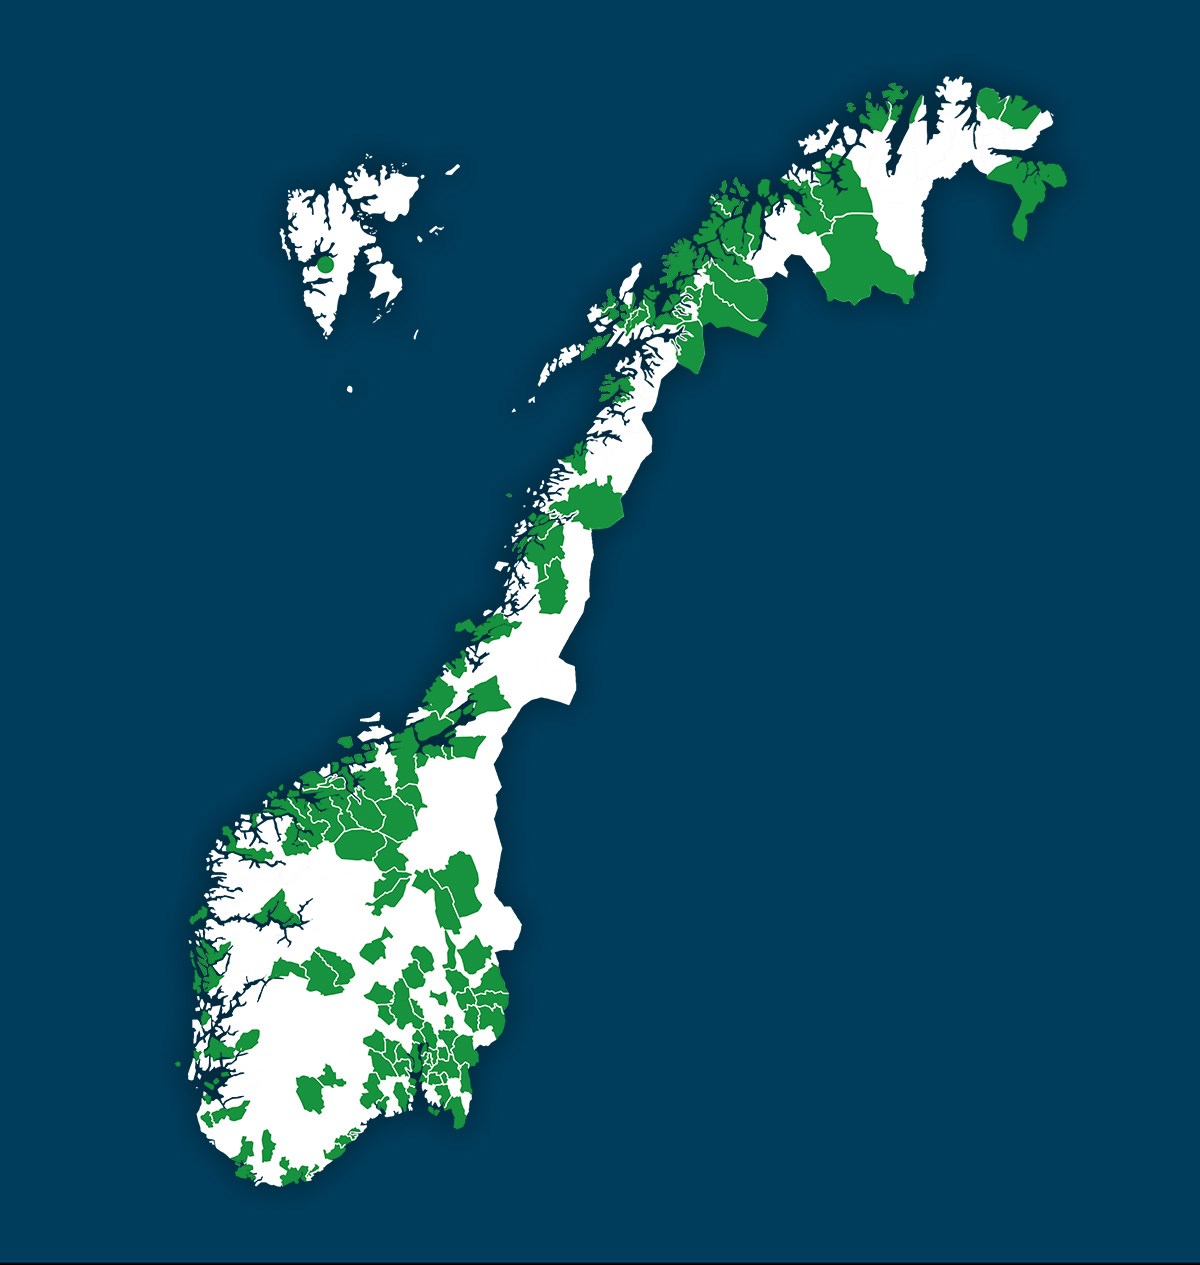 Kart over kommuner med grønne lån